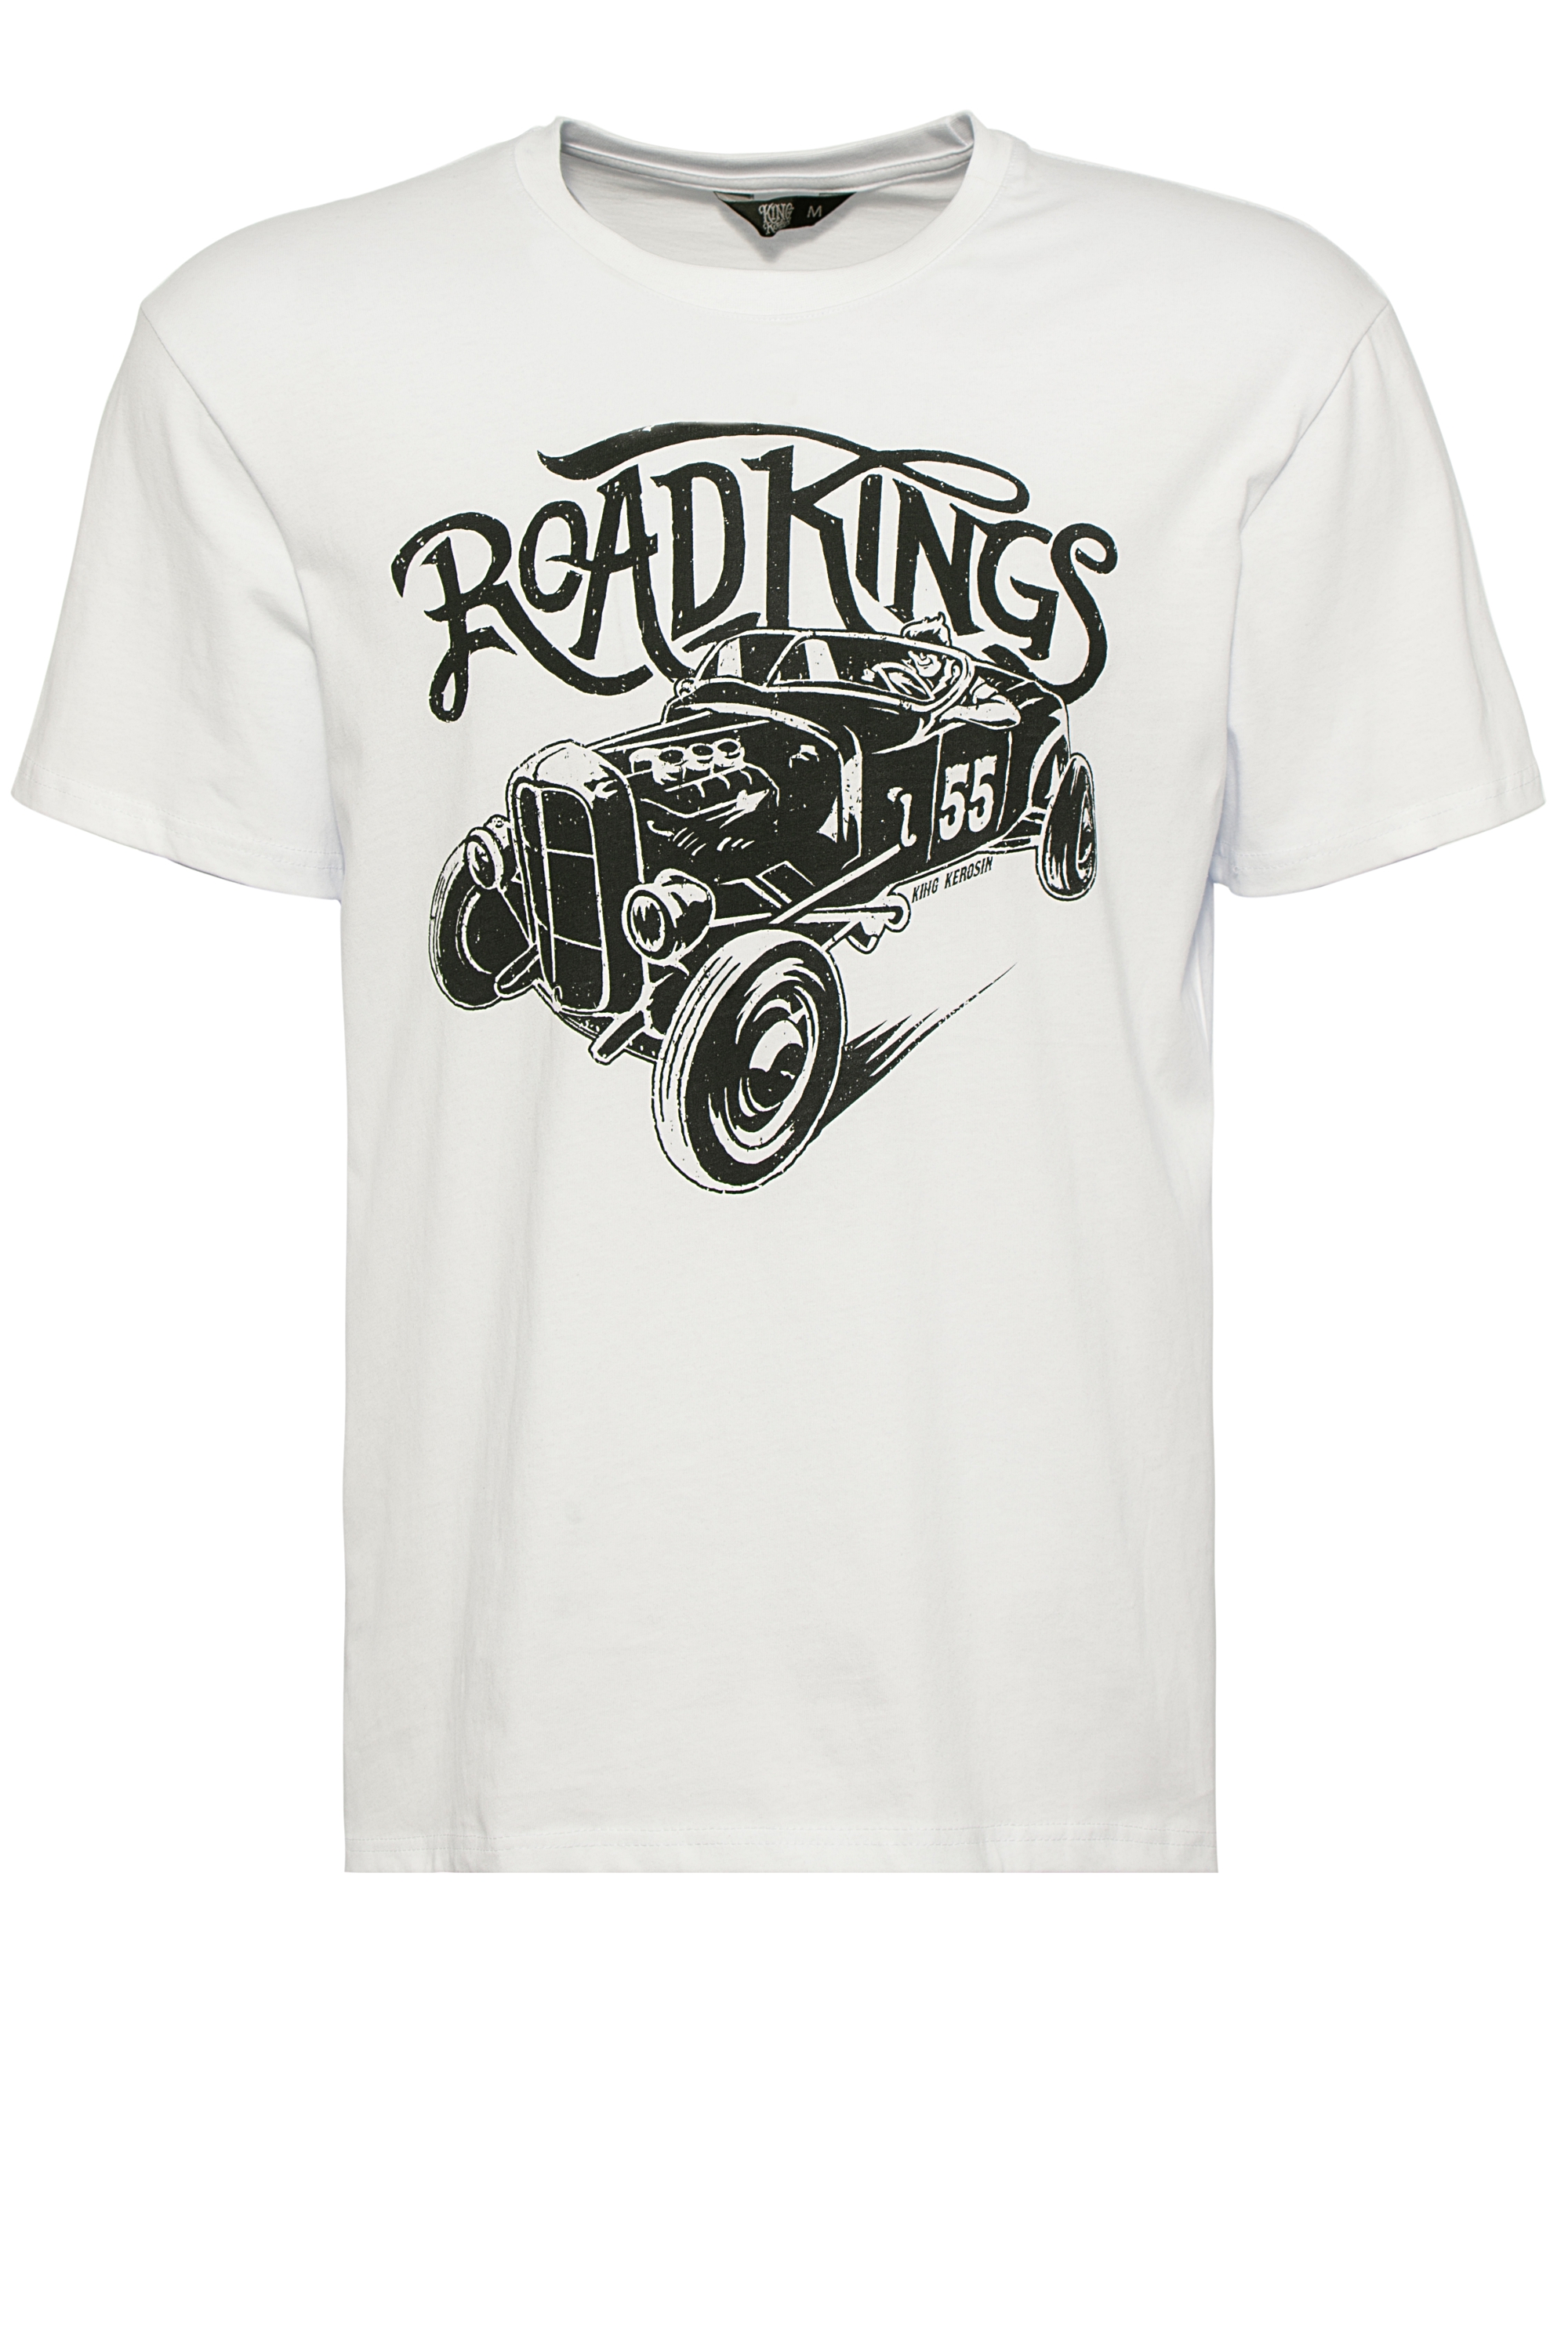 King Kerosin T-Shirt - Road Kings S